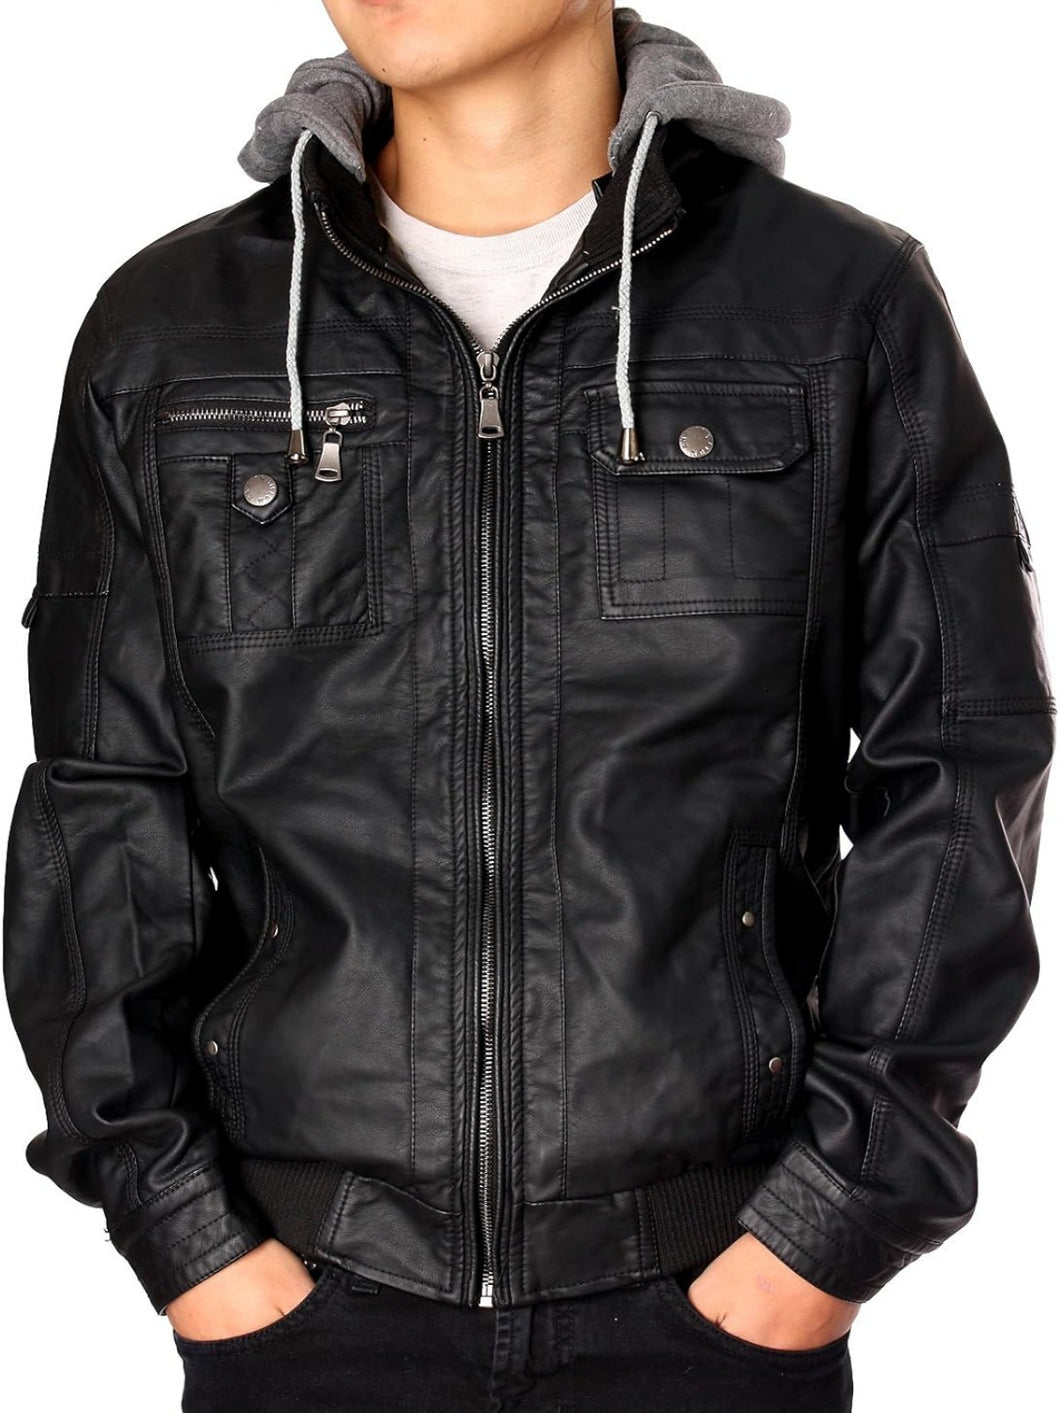 Men's Premium Designer Black Leather Jacket